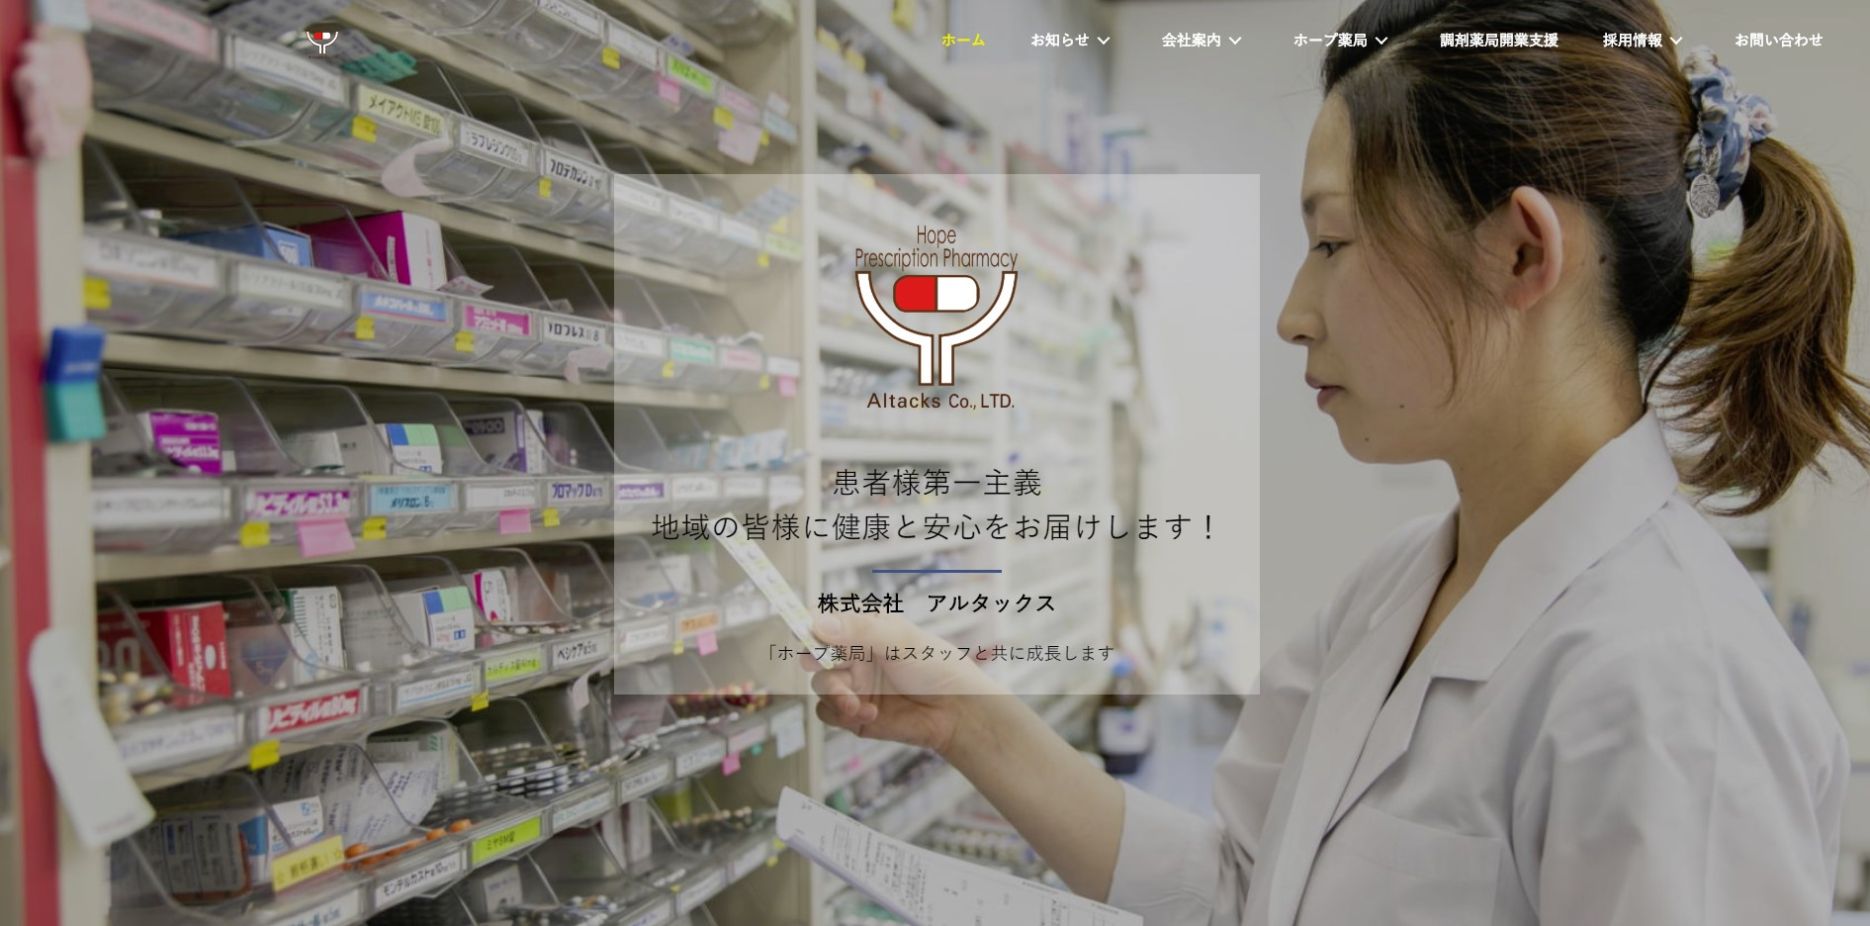 SnapCrab NoName 2018 12 27 11 39 31 No 00 - 宮城・仙台・山形で調剤薬局を運営されておる株式会社アルタックス様よりホームページ制作を承りました